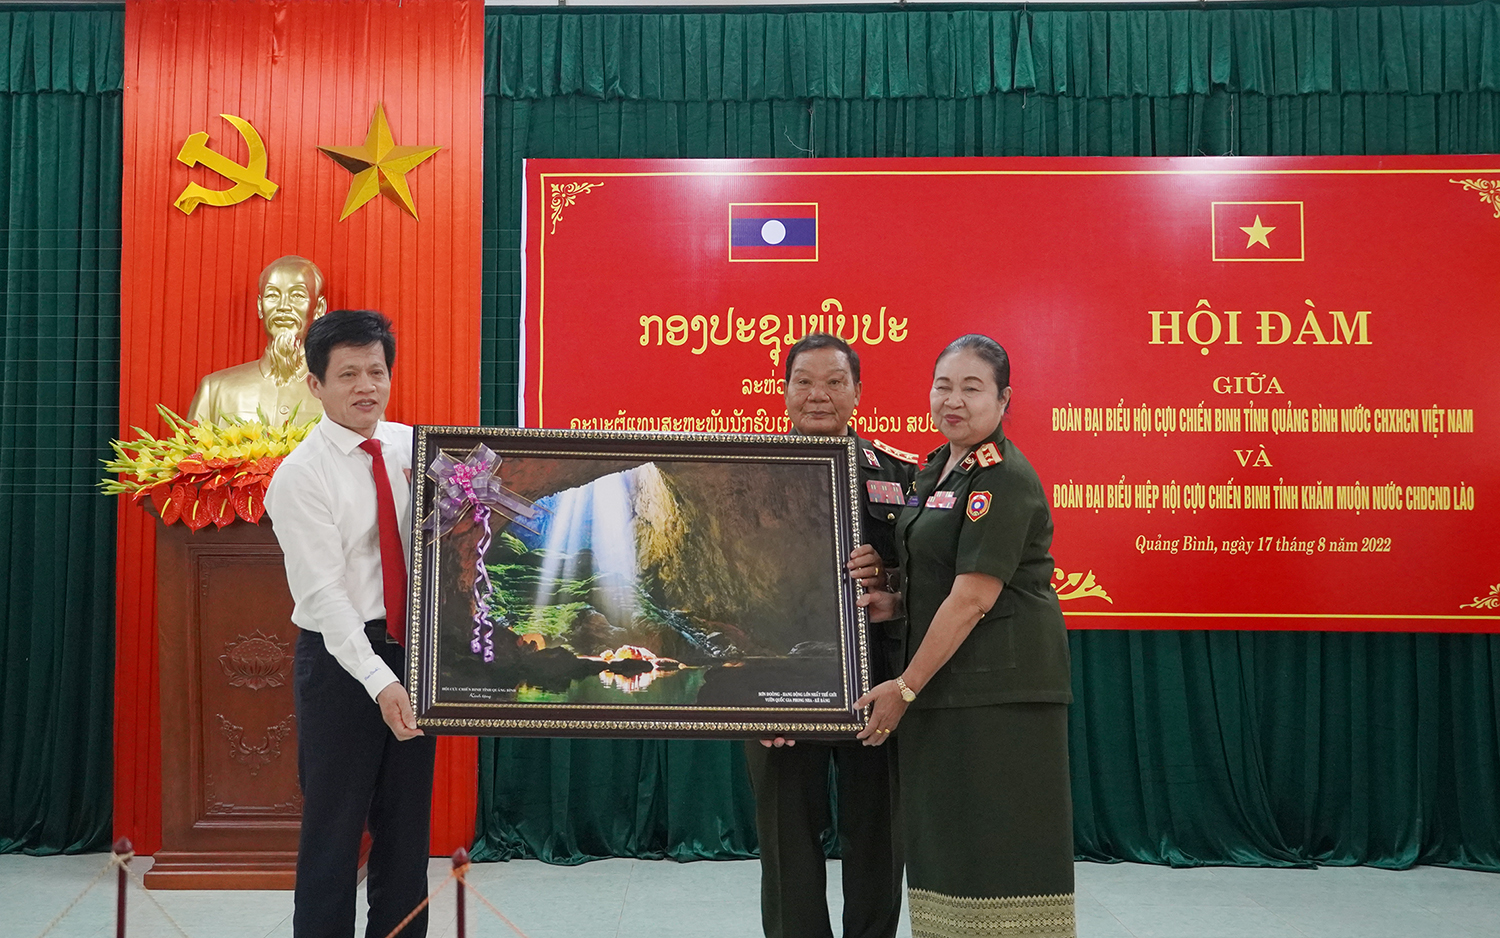 Hội đàm giữa hội Cựu chiến binh hai tỉnh Quảng Bình và Khăm Muộn